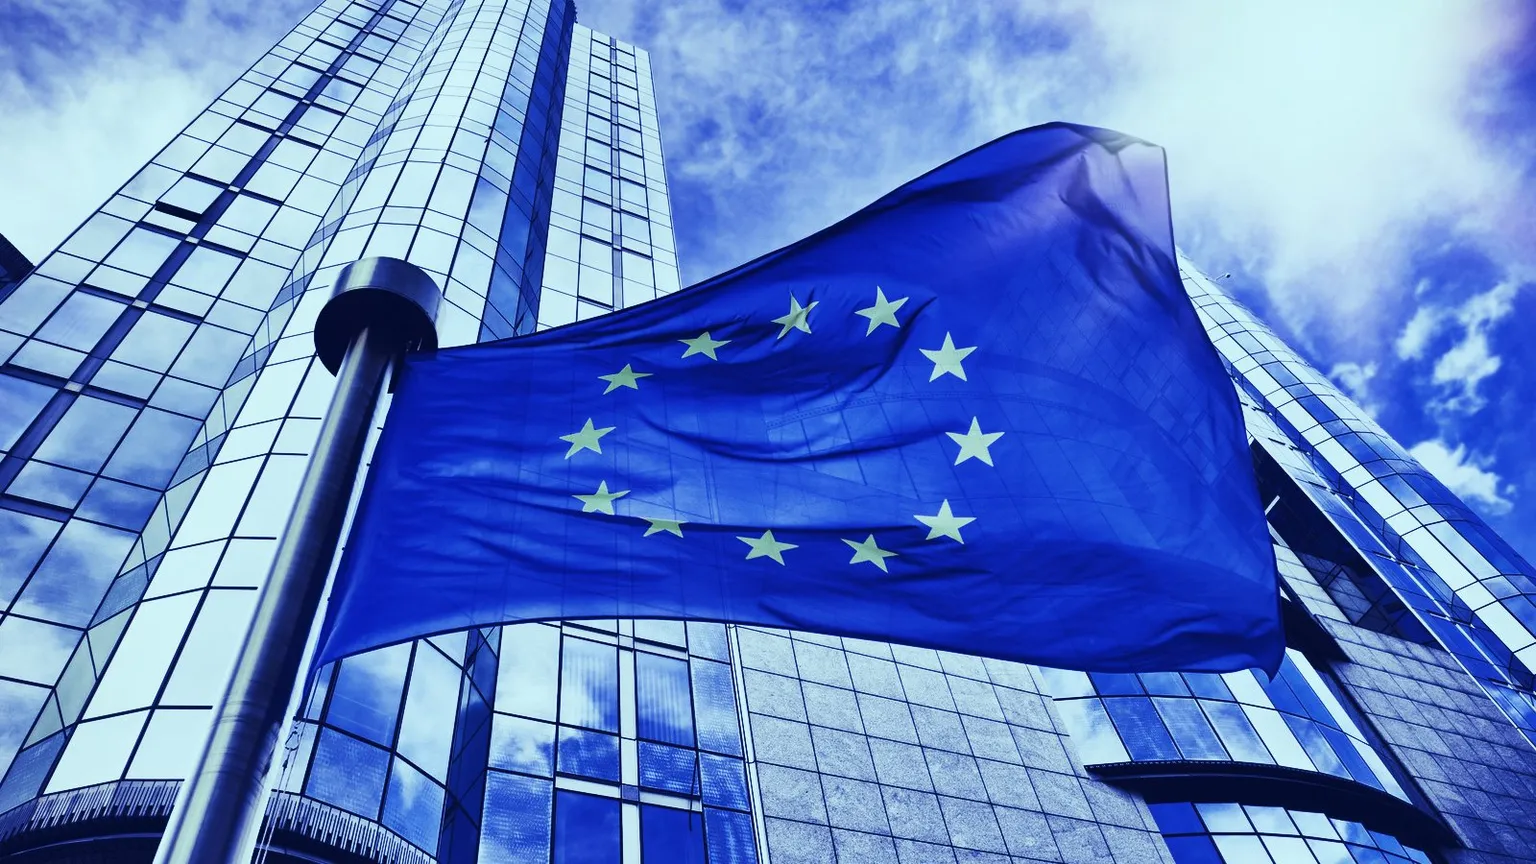 The EU. Image: Shutterstock